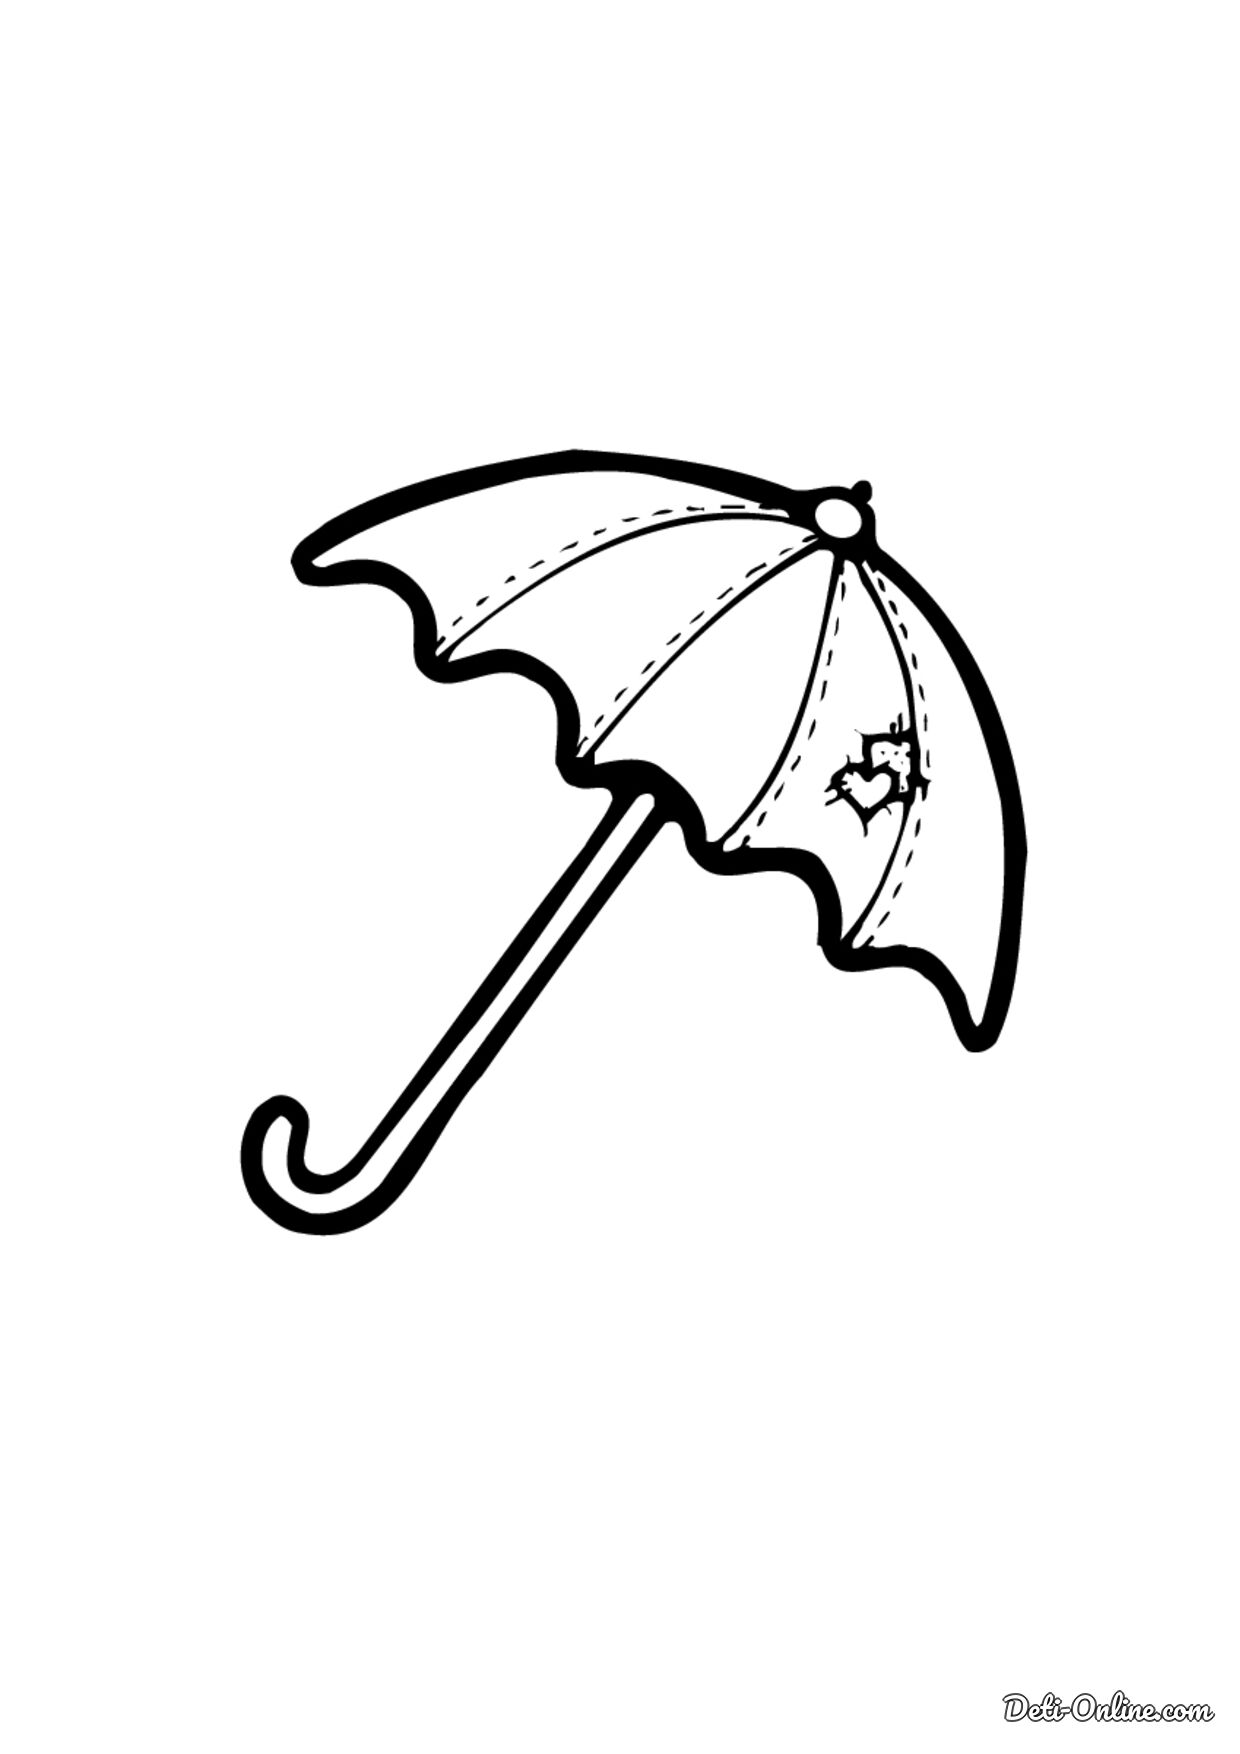 Распечатать зонтик. Зонт раскраска. Зонтик раскраска для детей. Зонтик раскраска для малышей. Зонтик трафарет.